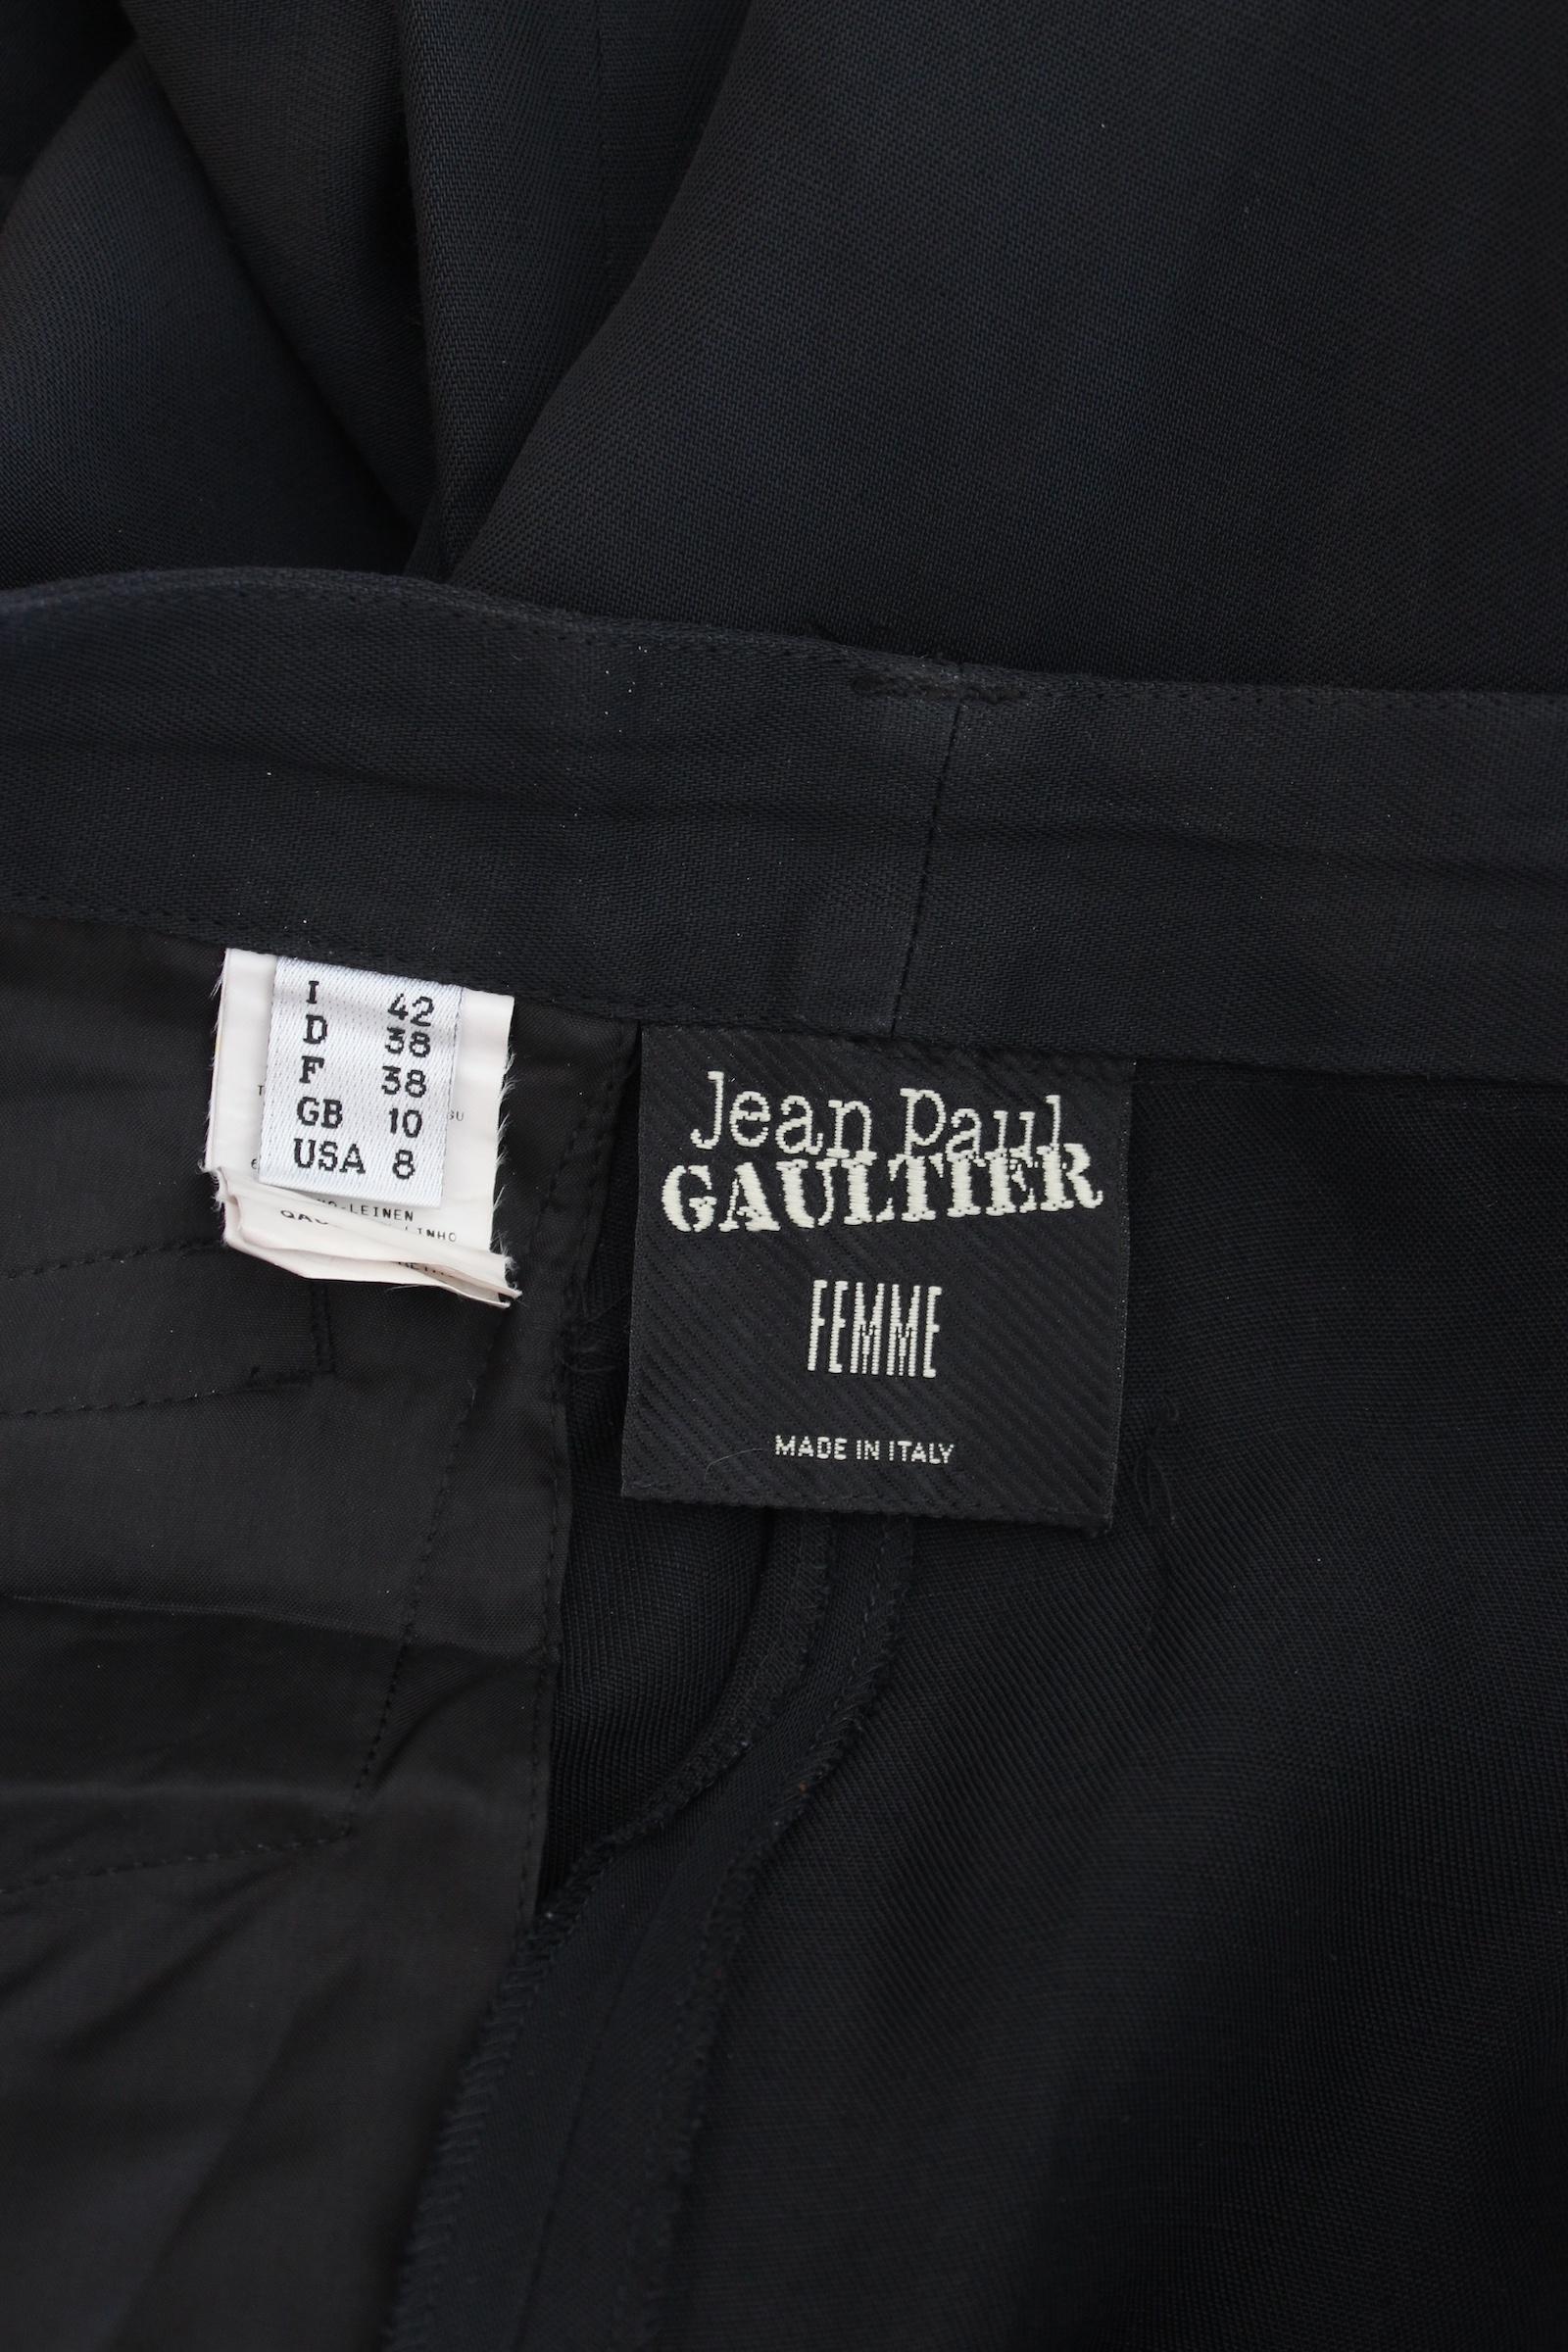 Jean Paul Gaultier Femme vintage 90s pantalon noir. Pantalon de soirée, taille haute, poches sur les côtés et dans le dos, 66% rayonne, 34% lin. Fabriqué en Italie.

Taille : 42 It 8 Us 10 Uk

Taille : 42 cm
Longueur : 104 cm
Longueur intérieure :